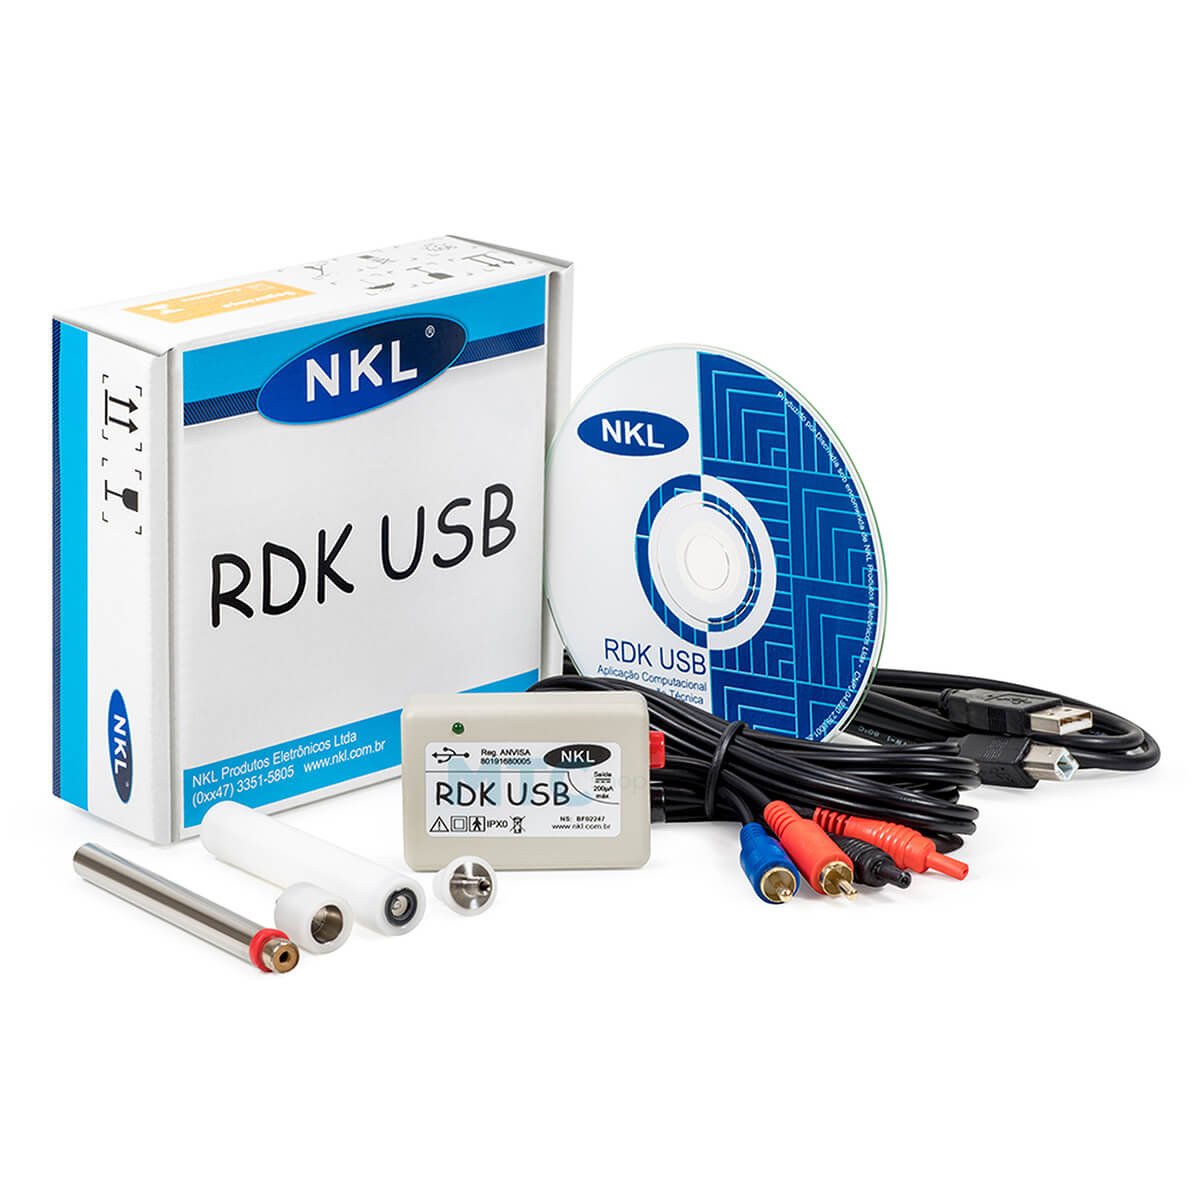 RDK USB - Sistema de Medição Ryodoraku Tradicional - NKL